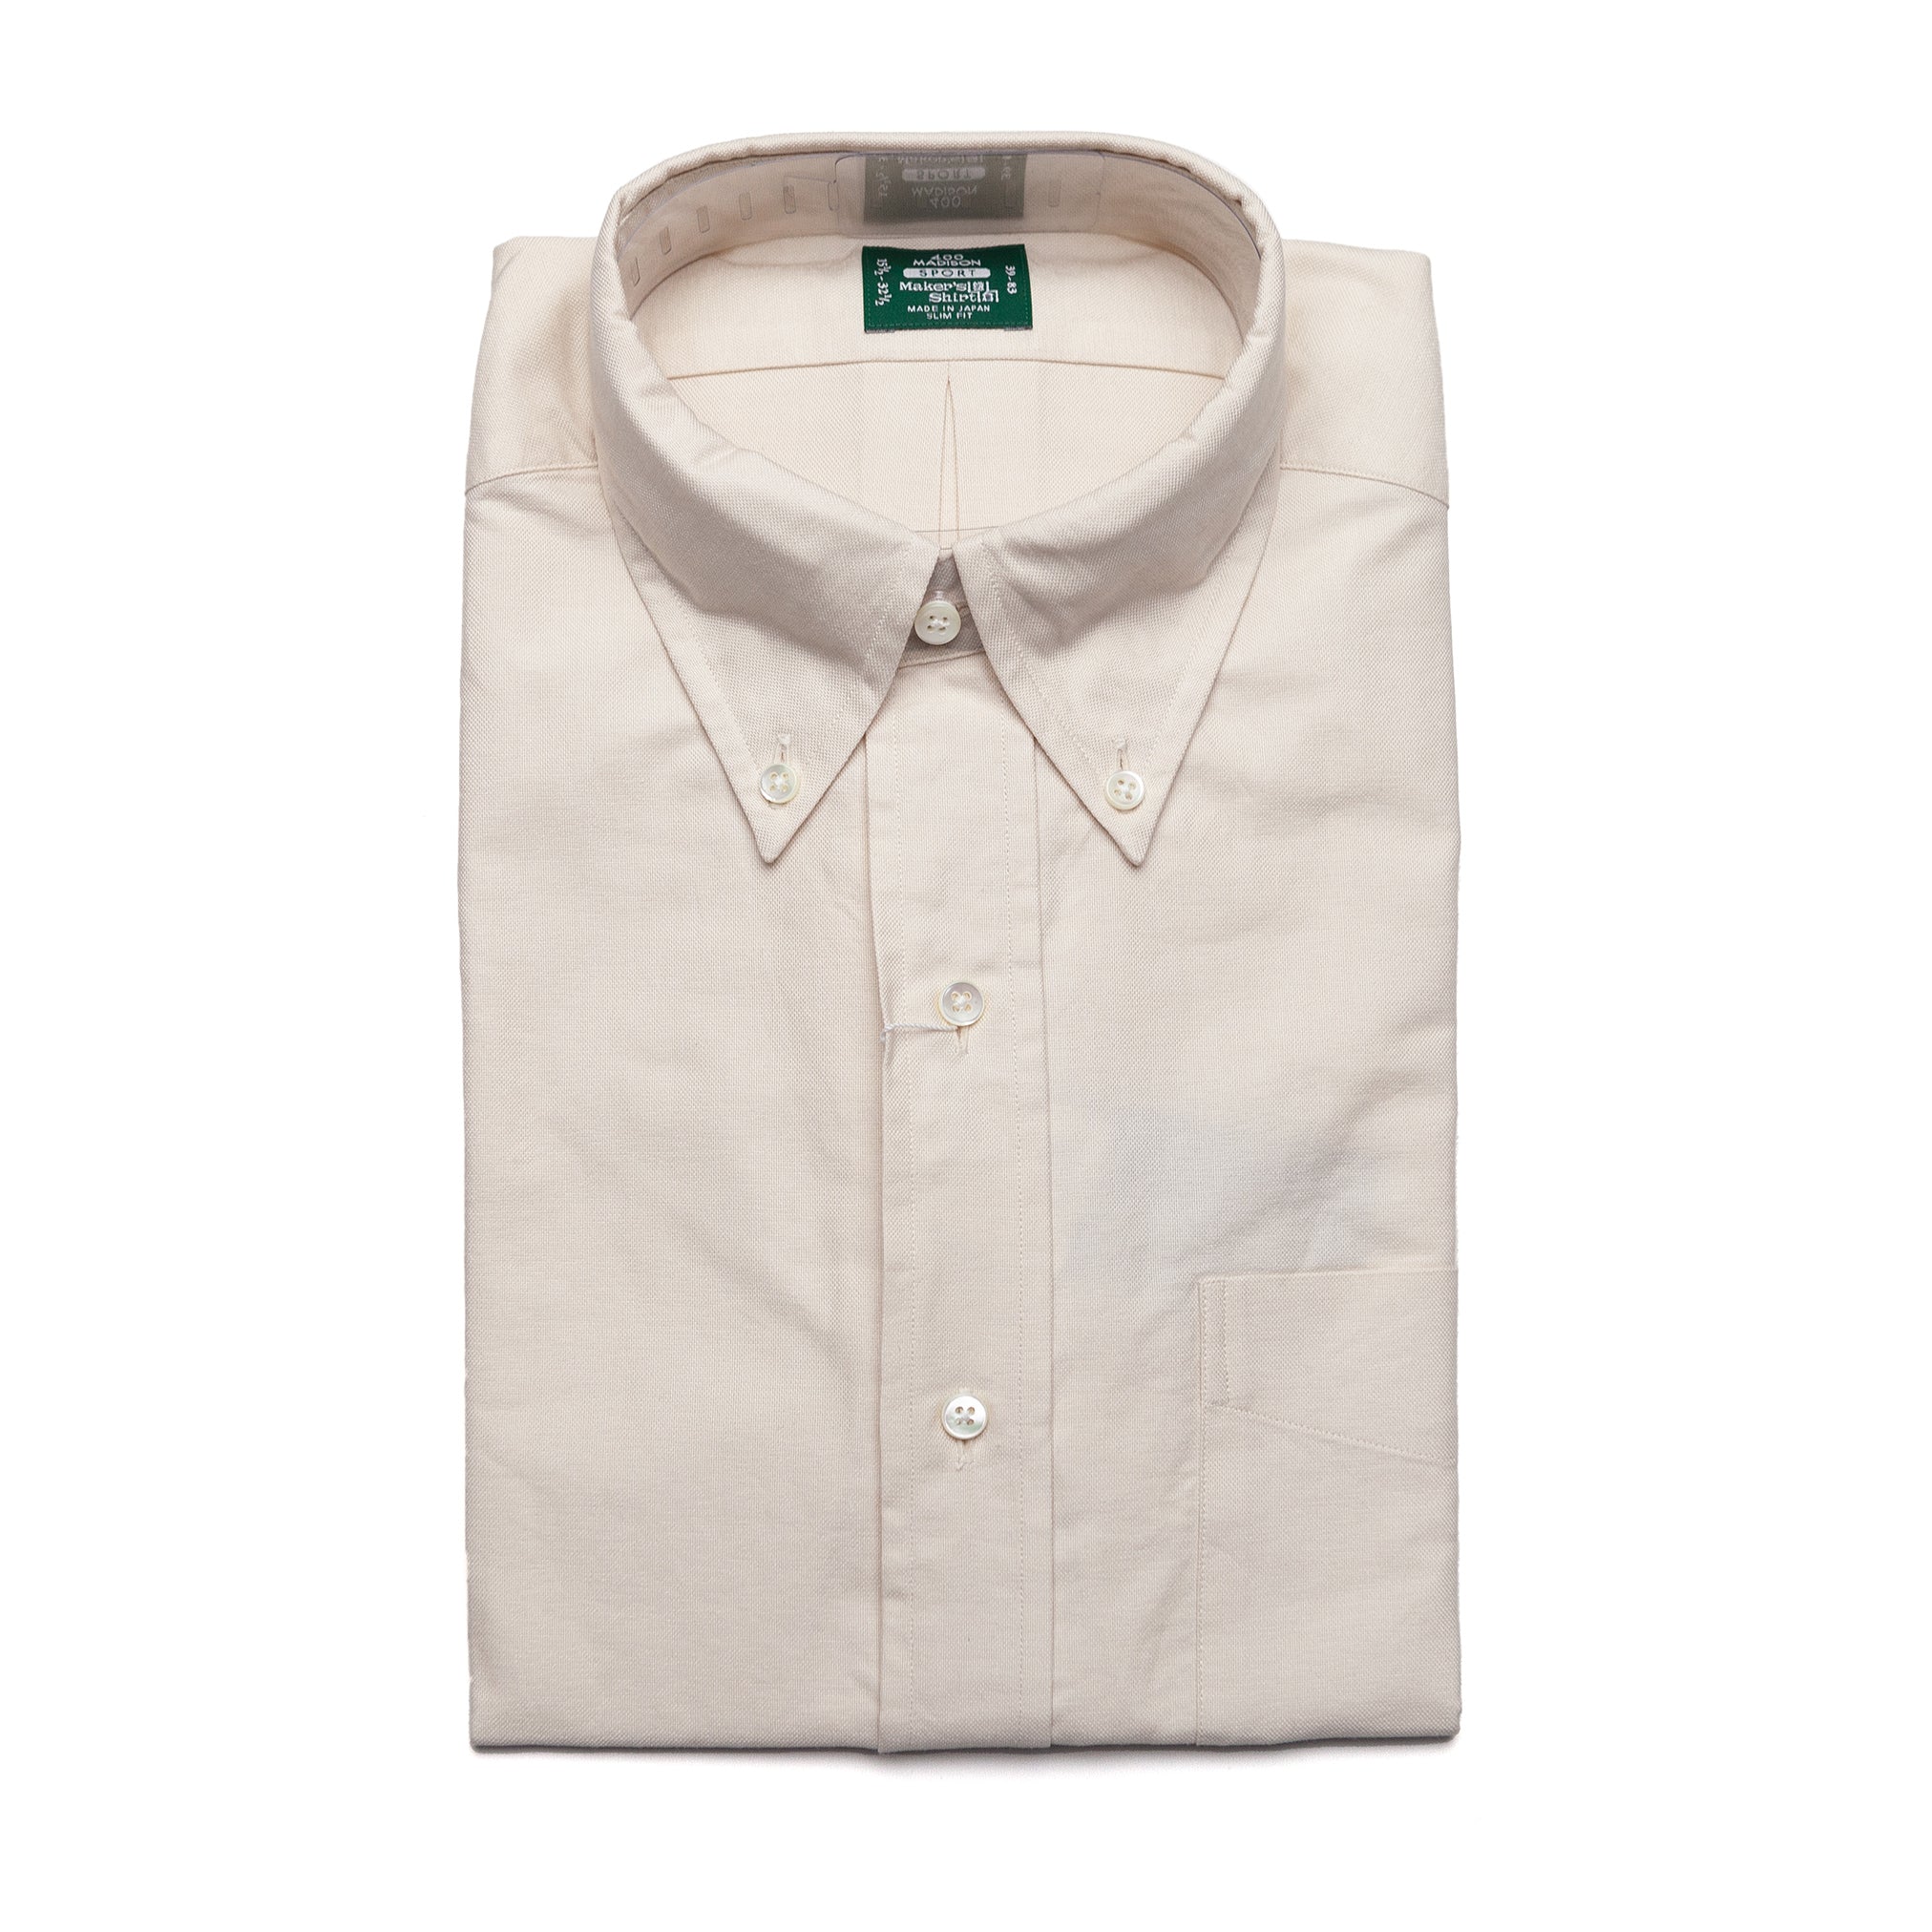 Sport Oxford Shirt in Beige - Tokio Slim Fit - Size 15 1/2